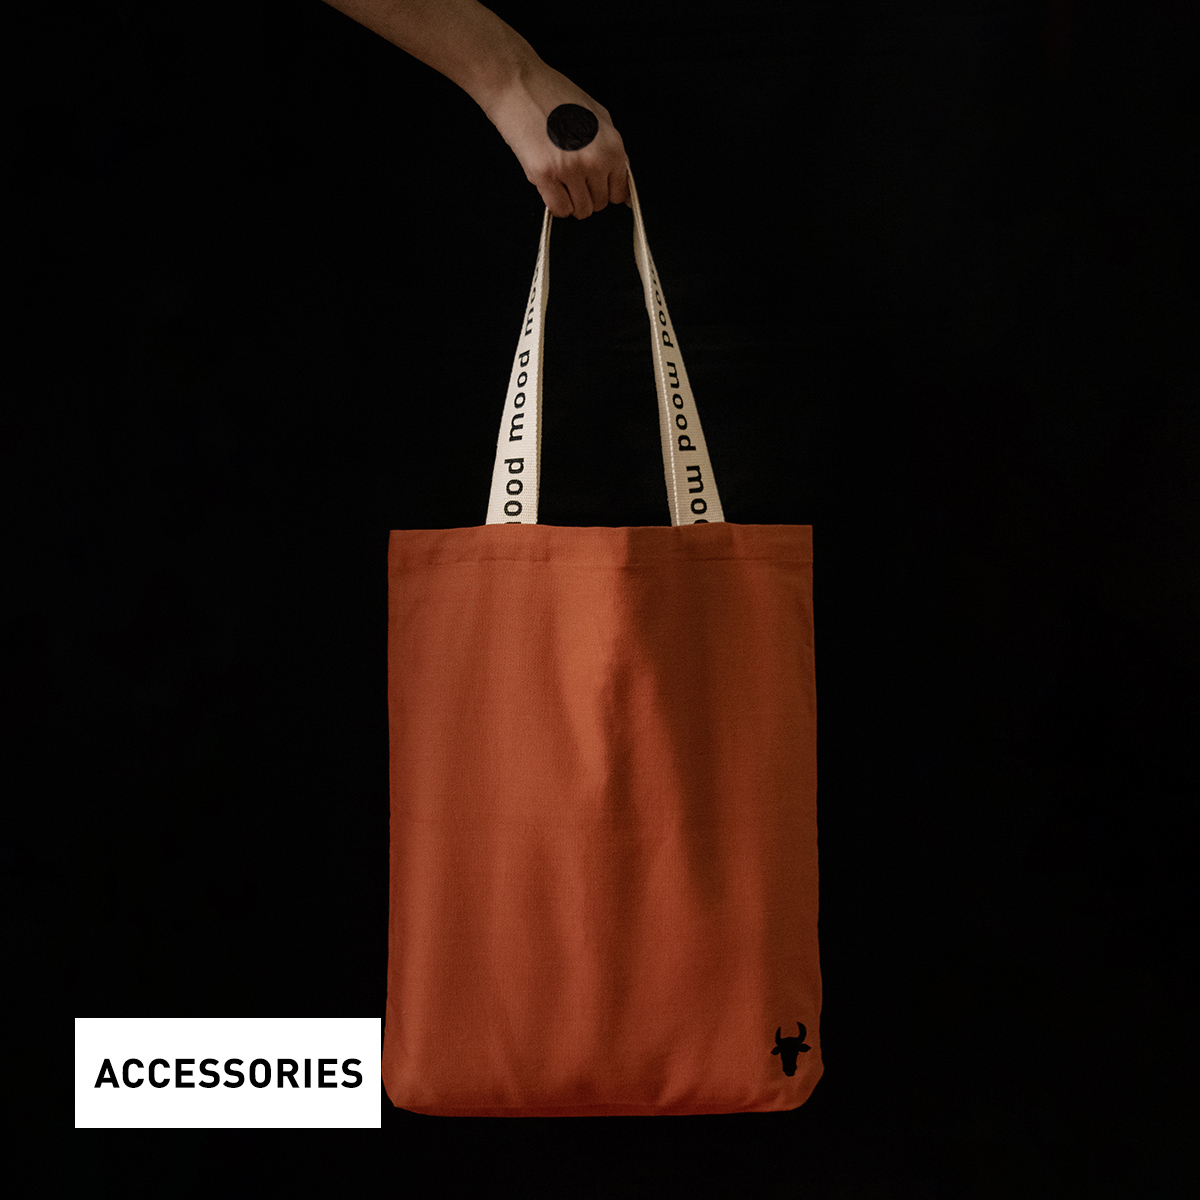 nomad-india-accessory-tote-bag-barahmasa-1